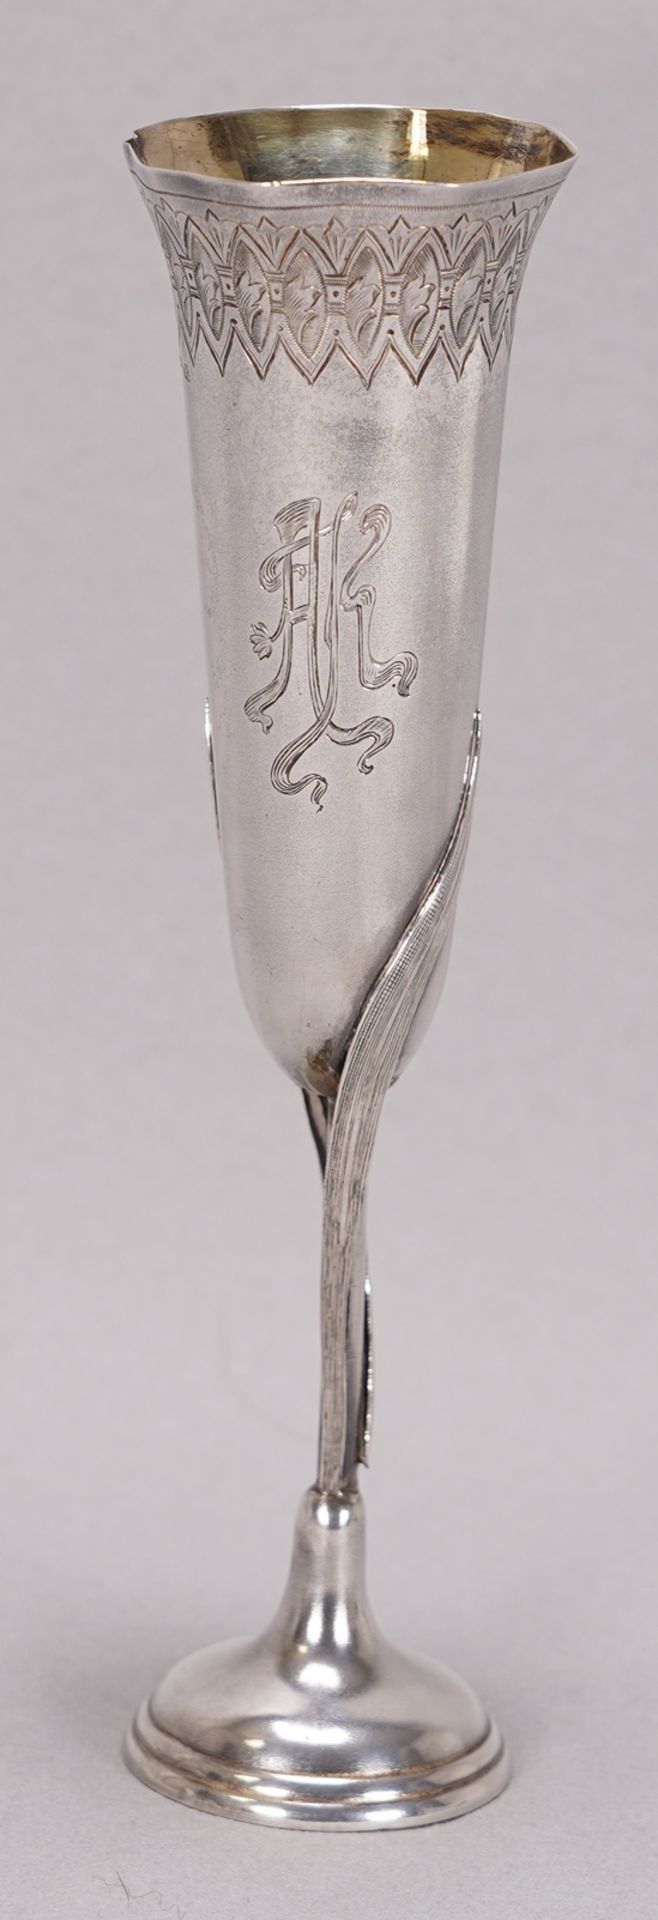 Art Nouveau Champagne Cup - Image 2 of 5